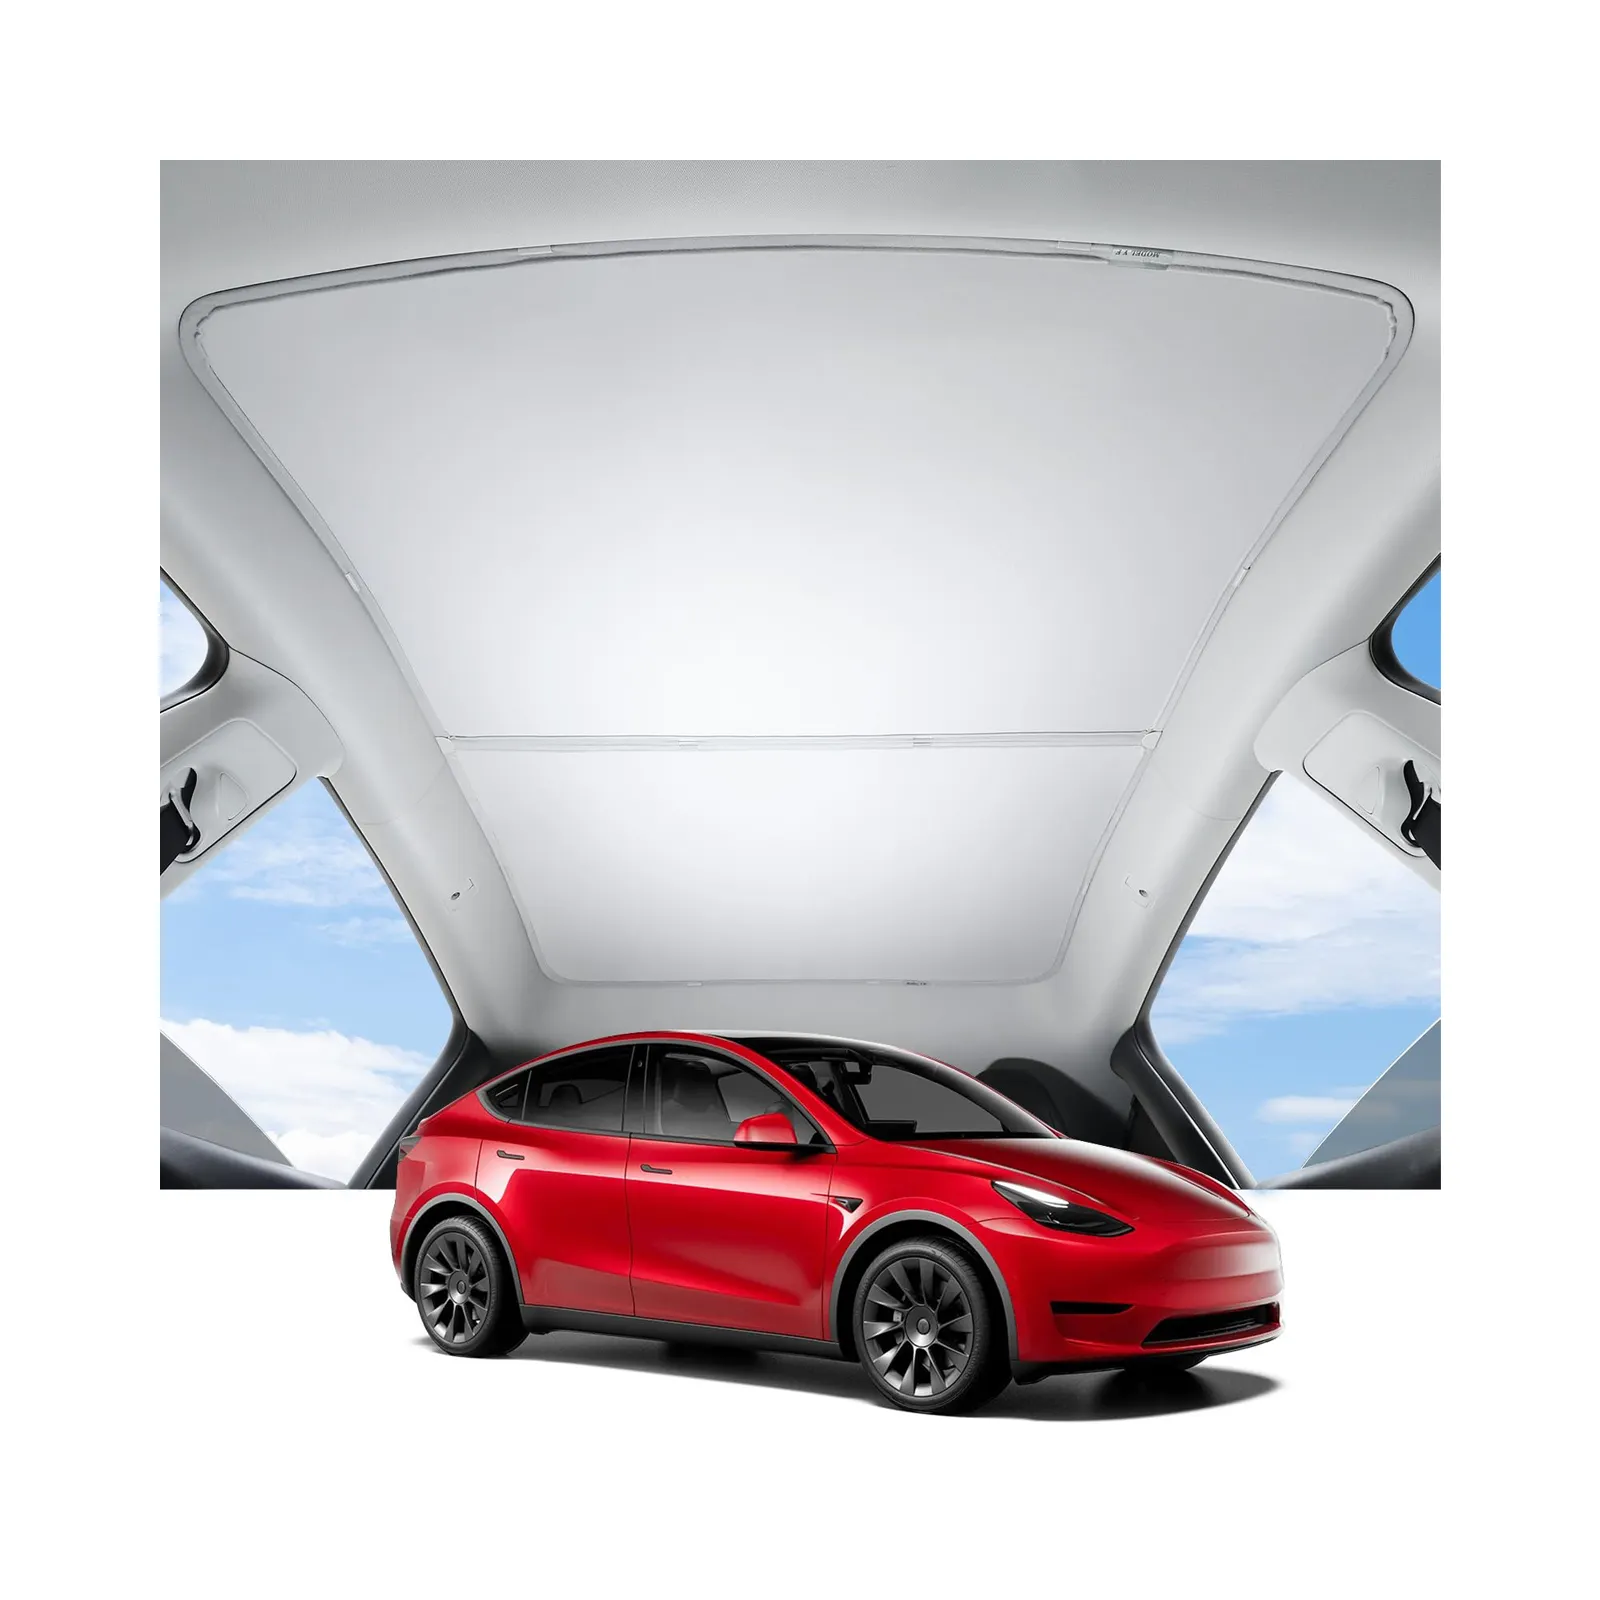 Tesla modeli 3 Model Y araba perde Sunroof için araba aksesuarları güneşlik geri çekilebilir güneşlik